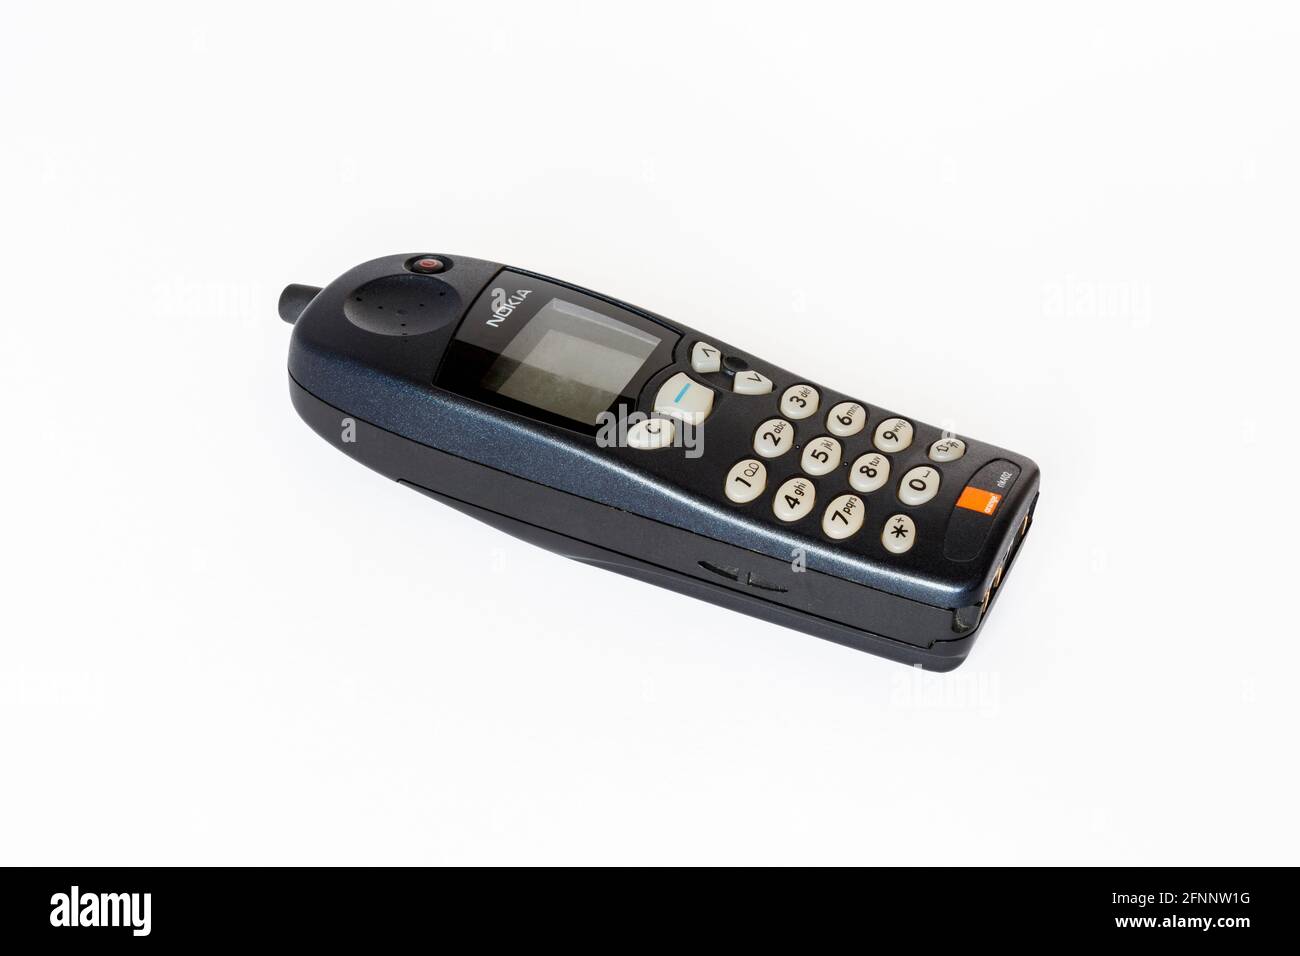 Un téléphone portable classique Nokia NK402 isolé sur fond blanc Banque D'Images